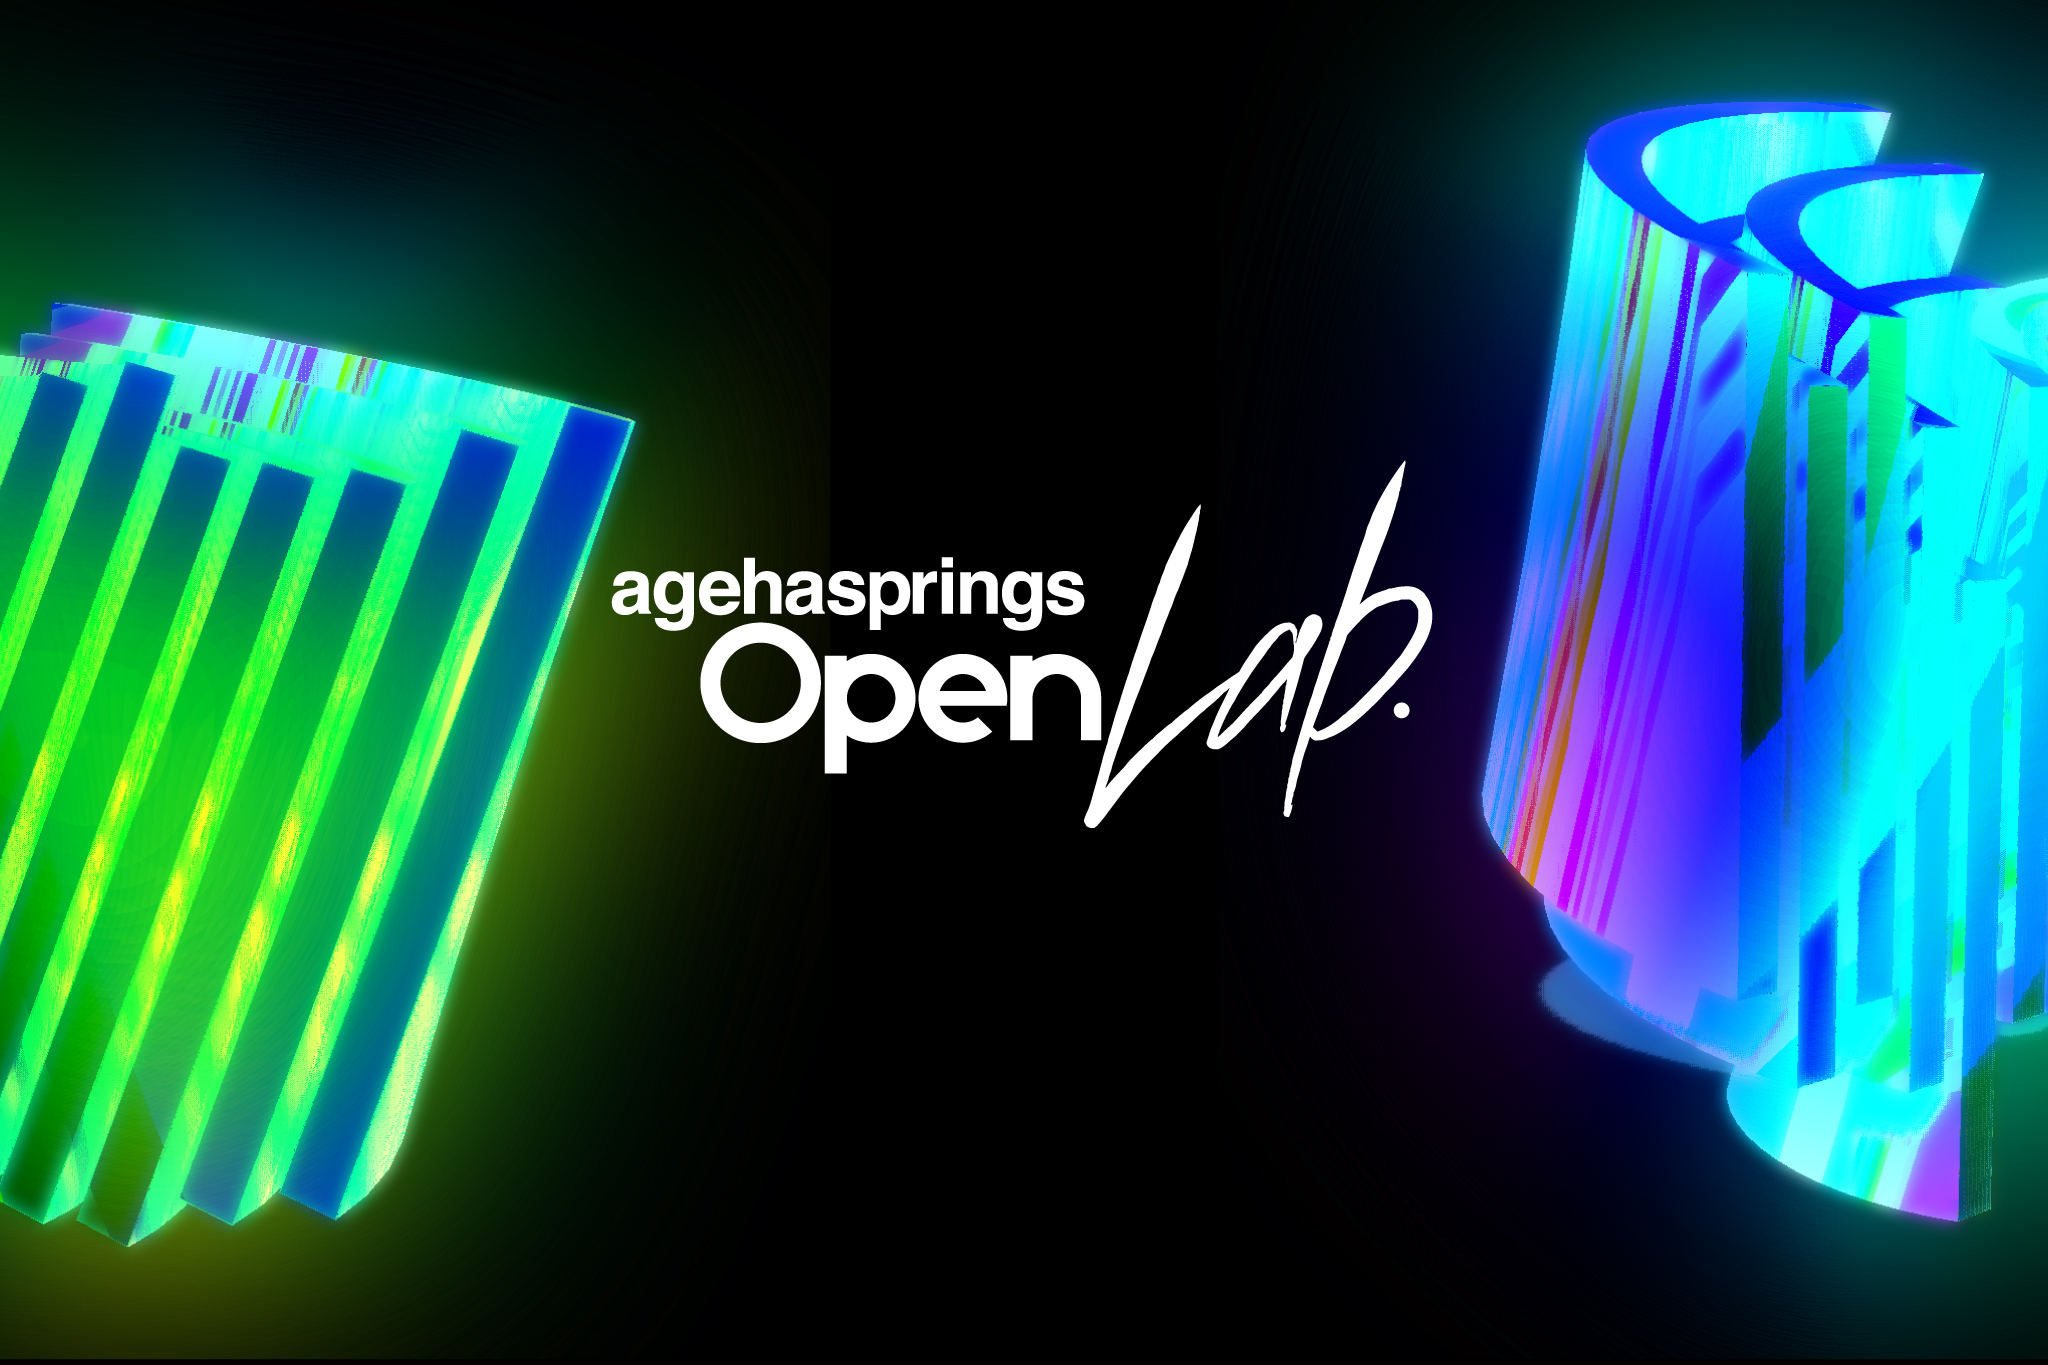 agehasprings Open Lab_fin.jpg